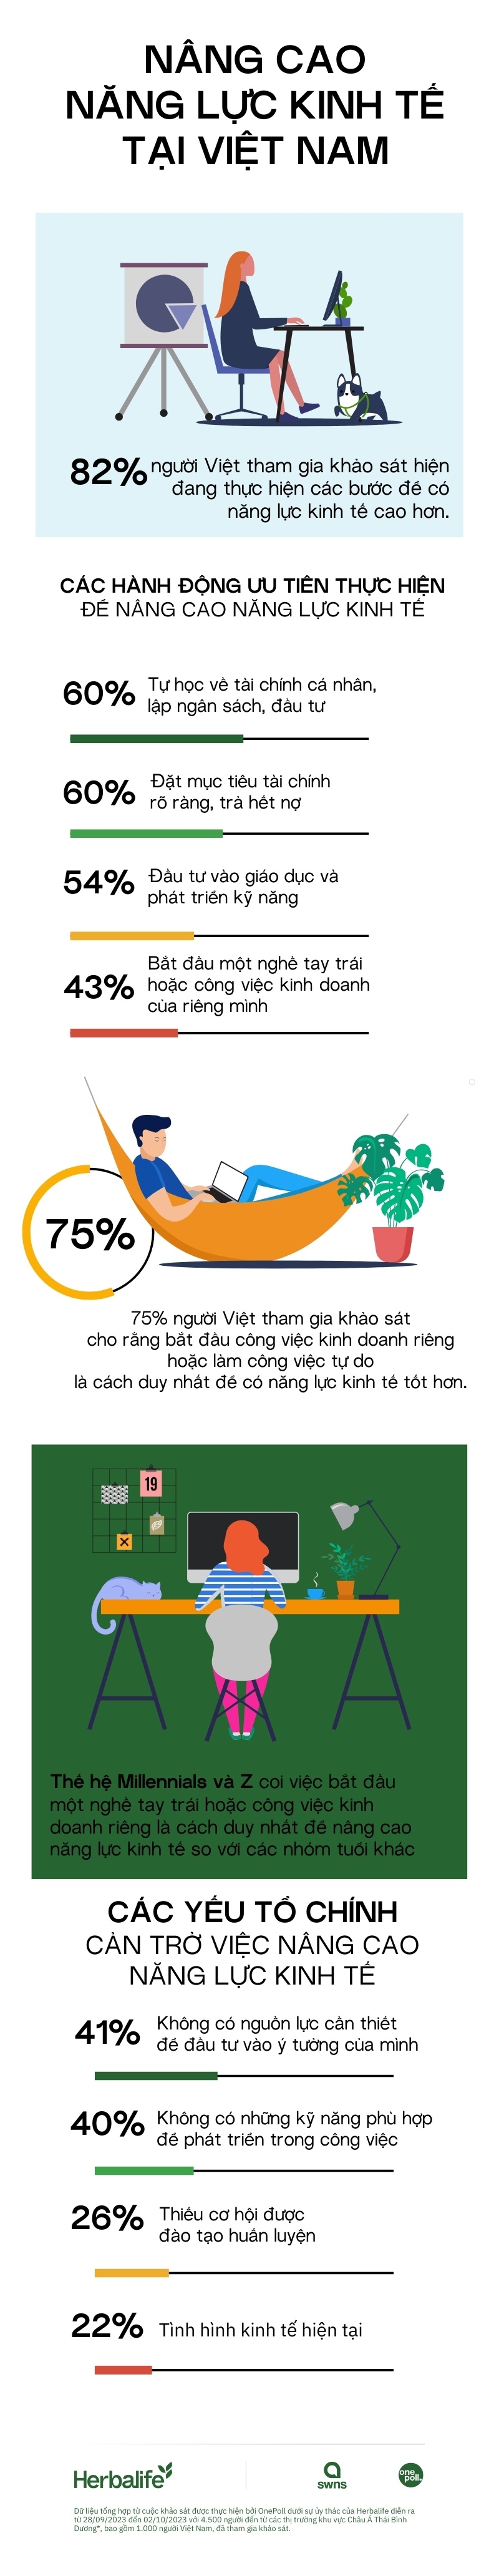 Các lý do chính cản trở việc nâng cao năng lực kinh tế của người Việt